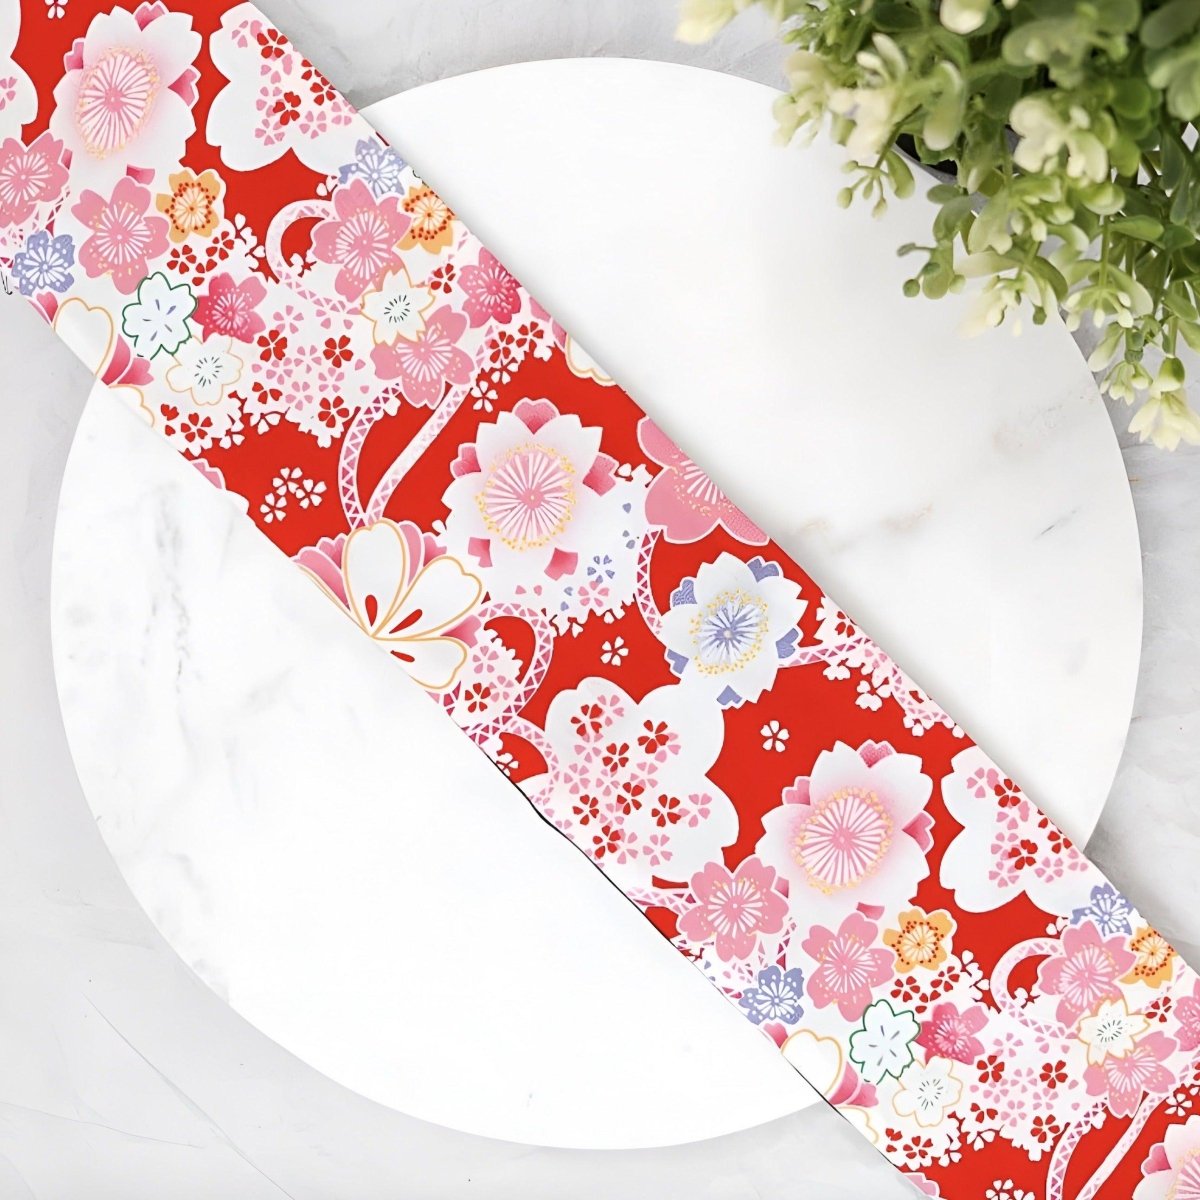 Ceinture Obi rouge à motifs fleurs japonaises, modèle Noya - La Boutique de la Ceinture